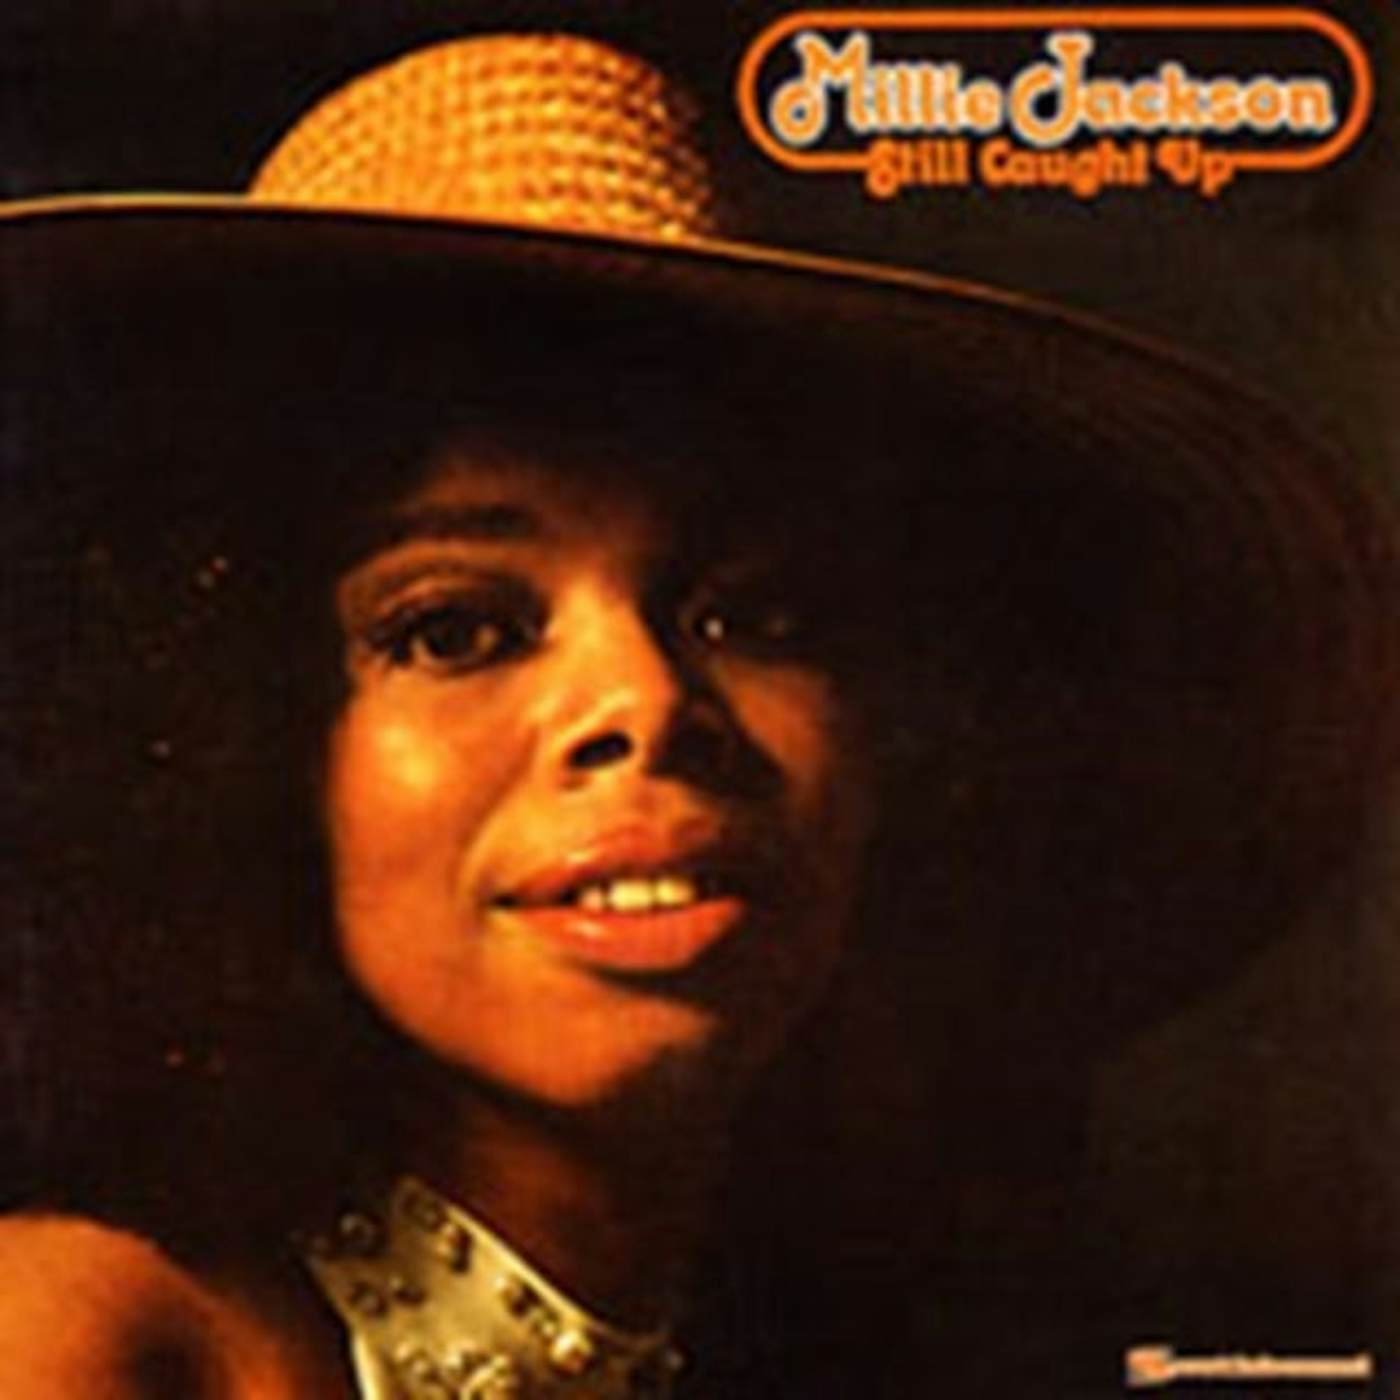 Millie Jackson CD - Still Caught Up